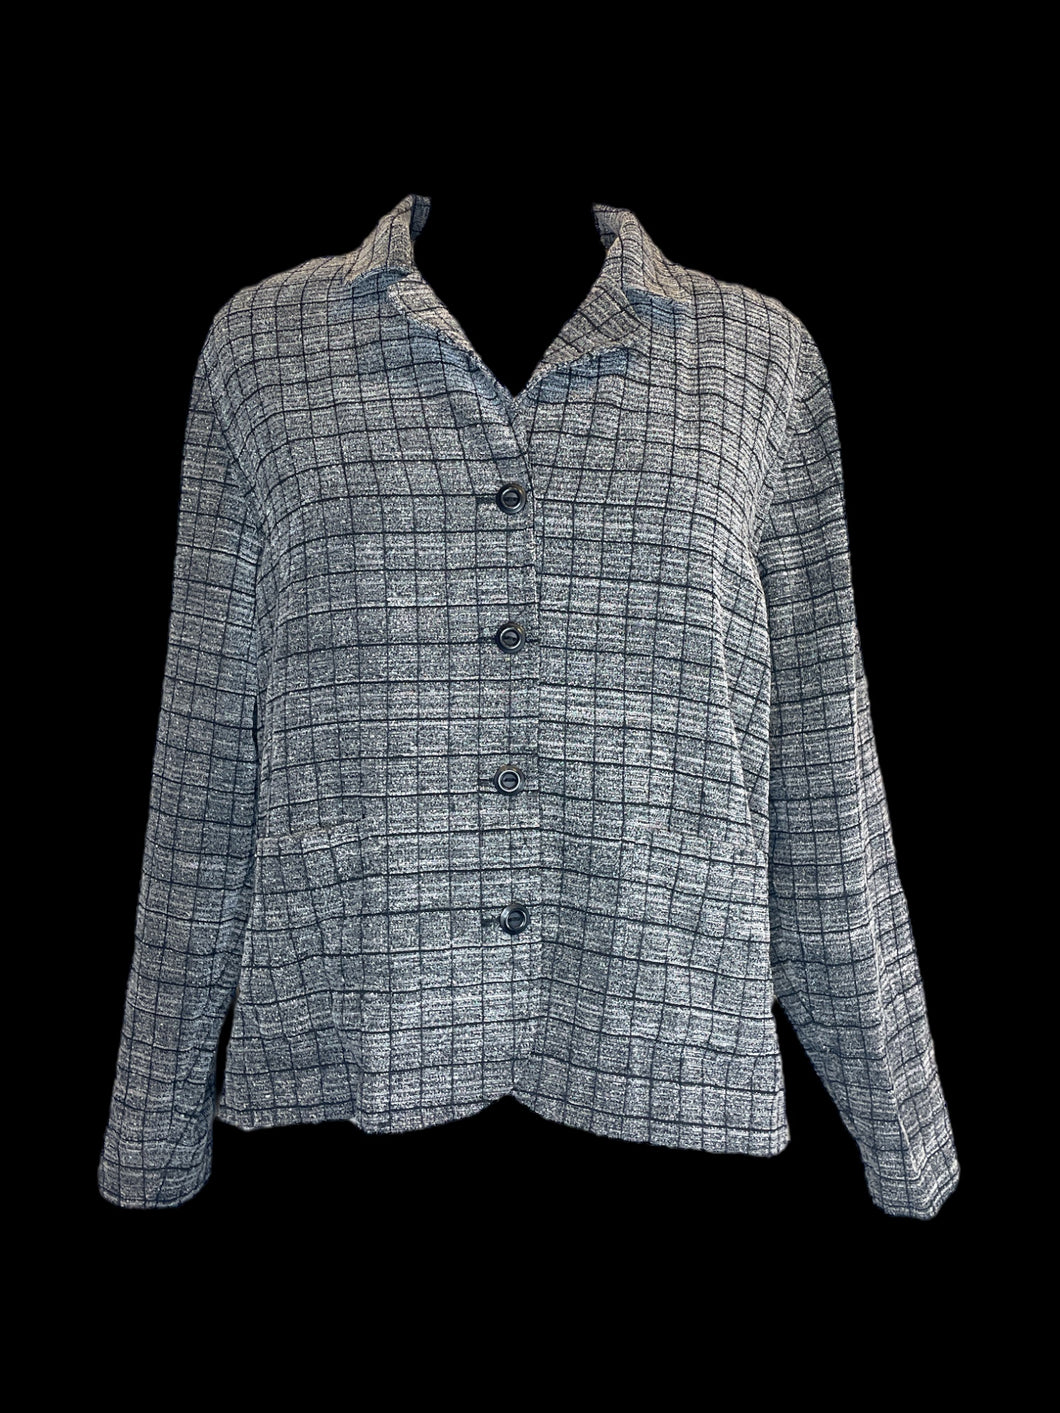 0X Vintage grey & black windowpane plaid 3/4 sleeve button down blazer w/ folded collar, shoulder pads, folded cuffs, & pockets